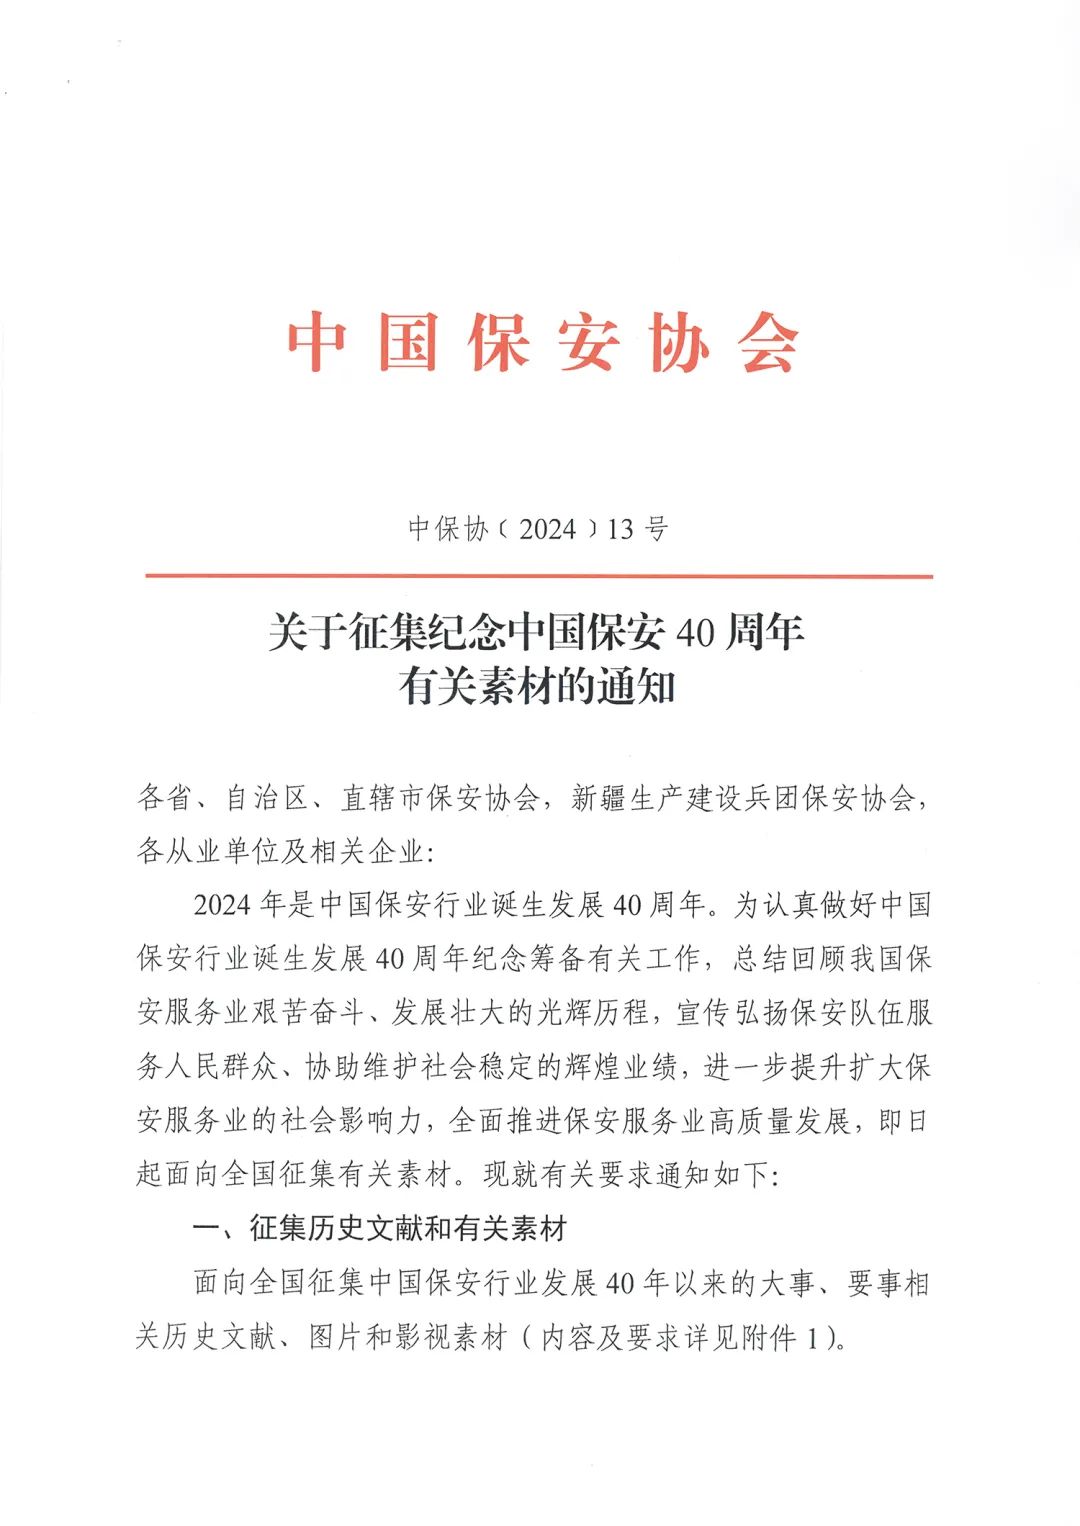 【转发通知】关于征集纪念中国保安40周年有关素材的通知